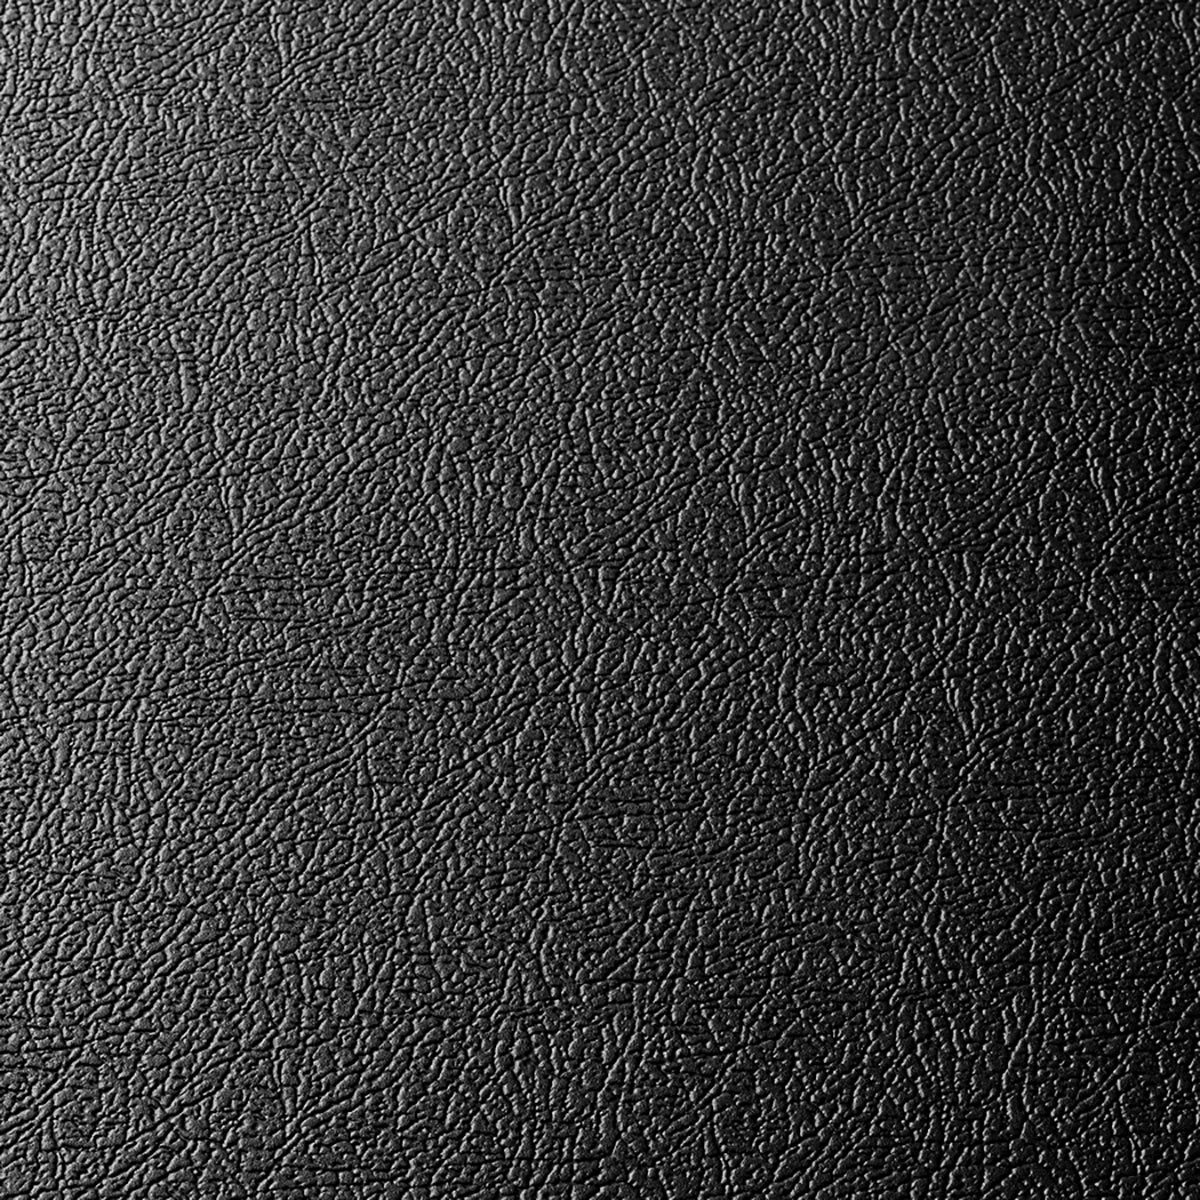 Klikflor X500 Garage Floor Ramp in Black (114 x 496 x 7mm)